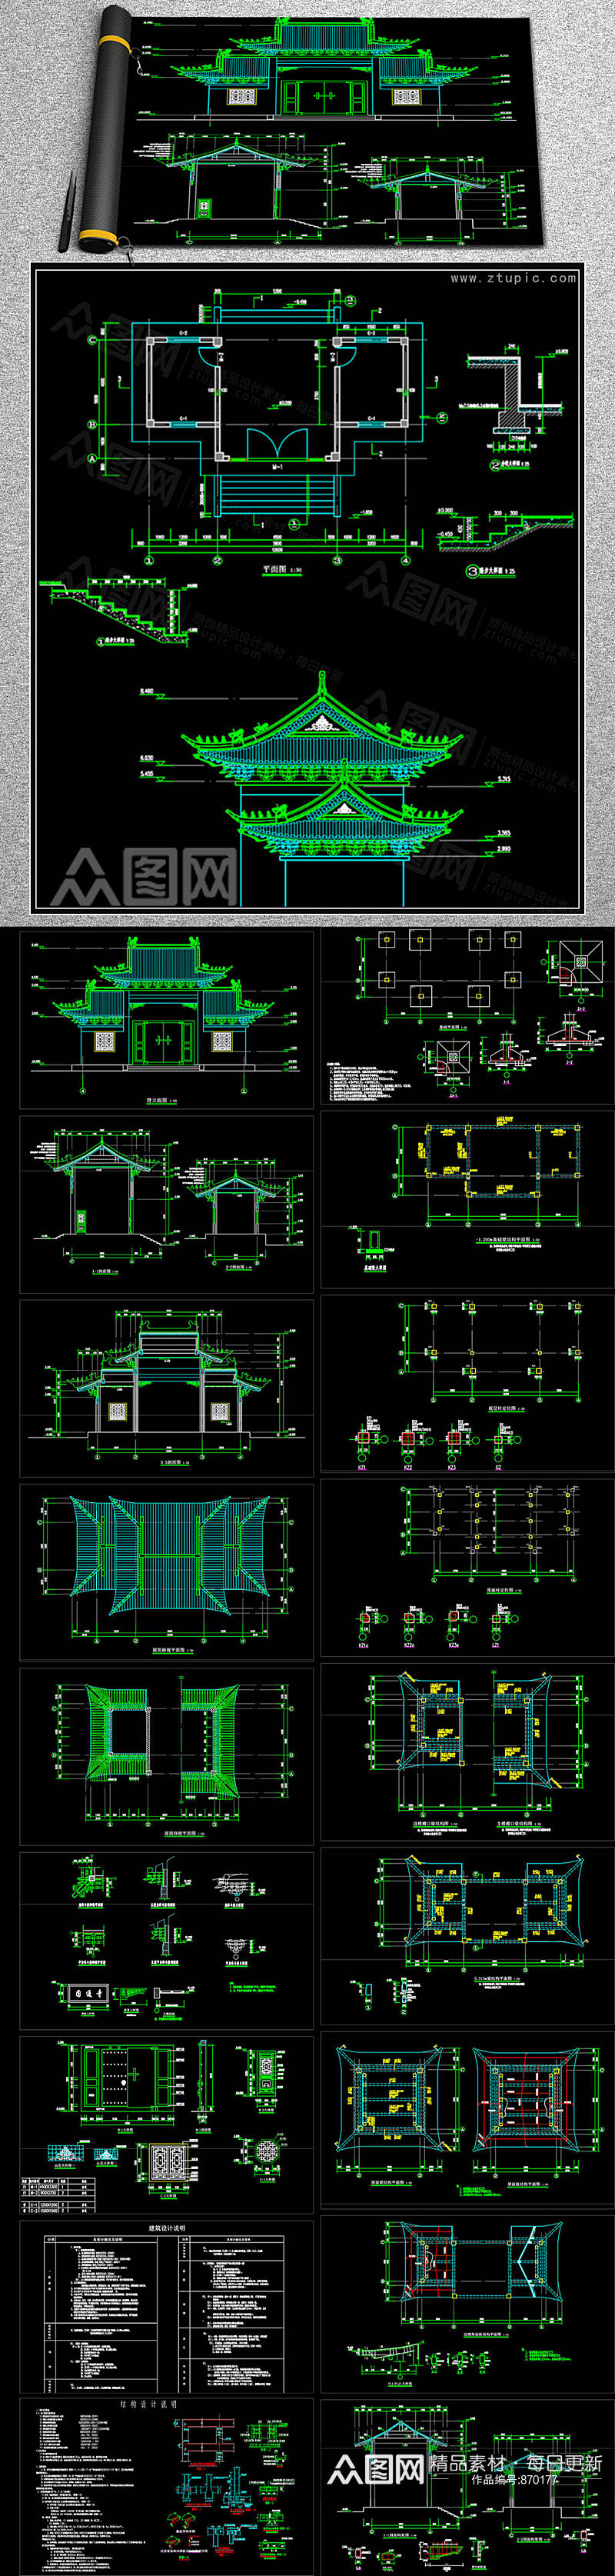 寺庙寺院山门殿建筑结构图纸CAD素材素材